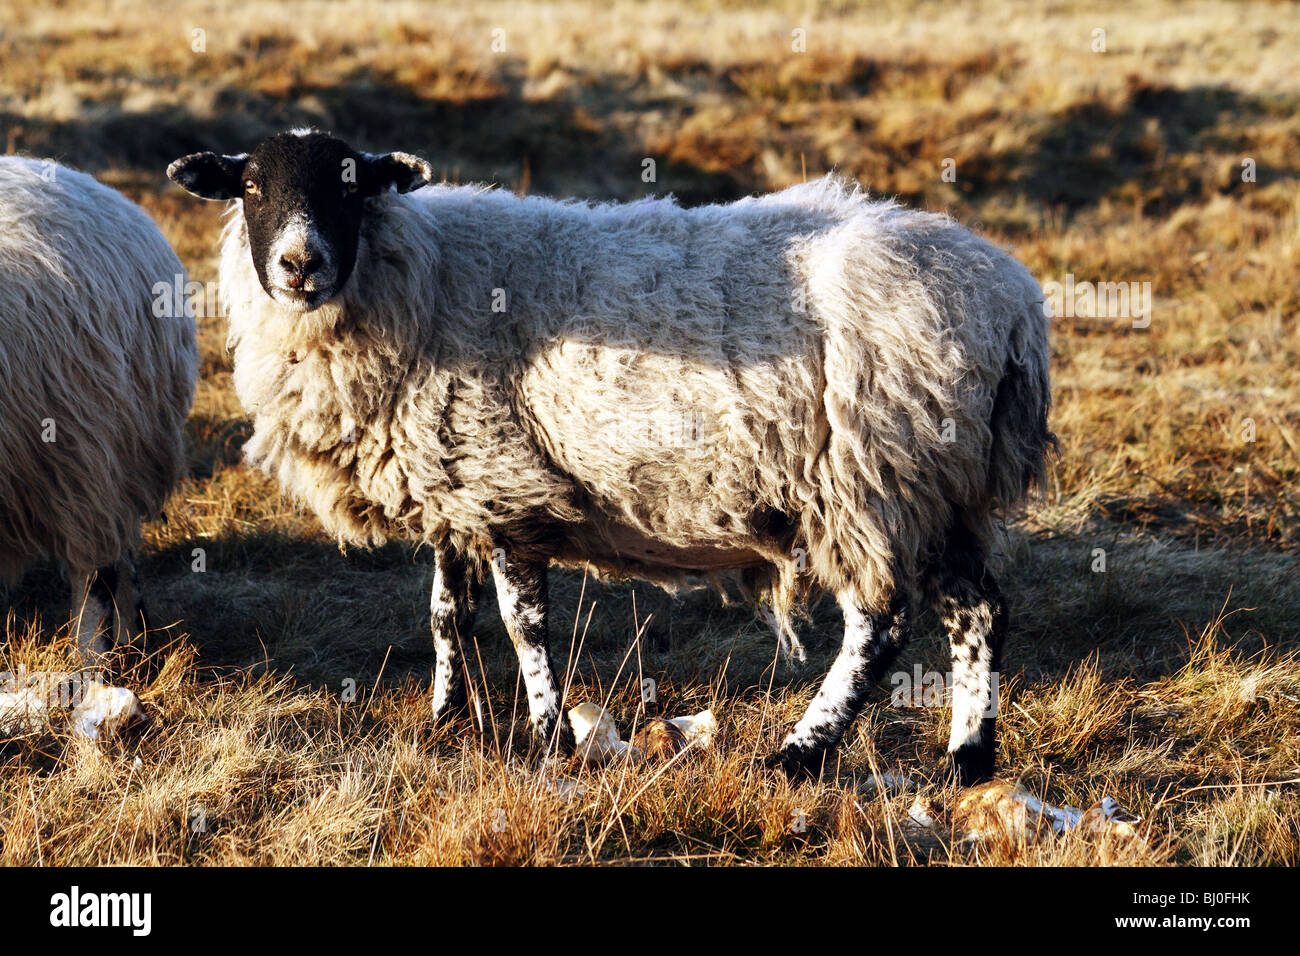 Razze ovine Derbyshire Gritstone pecore un domestico animale da azienda che di solito è interrogata Foto Stock